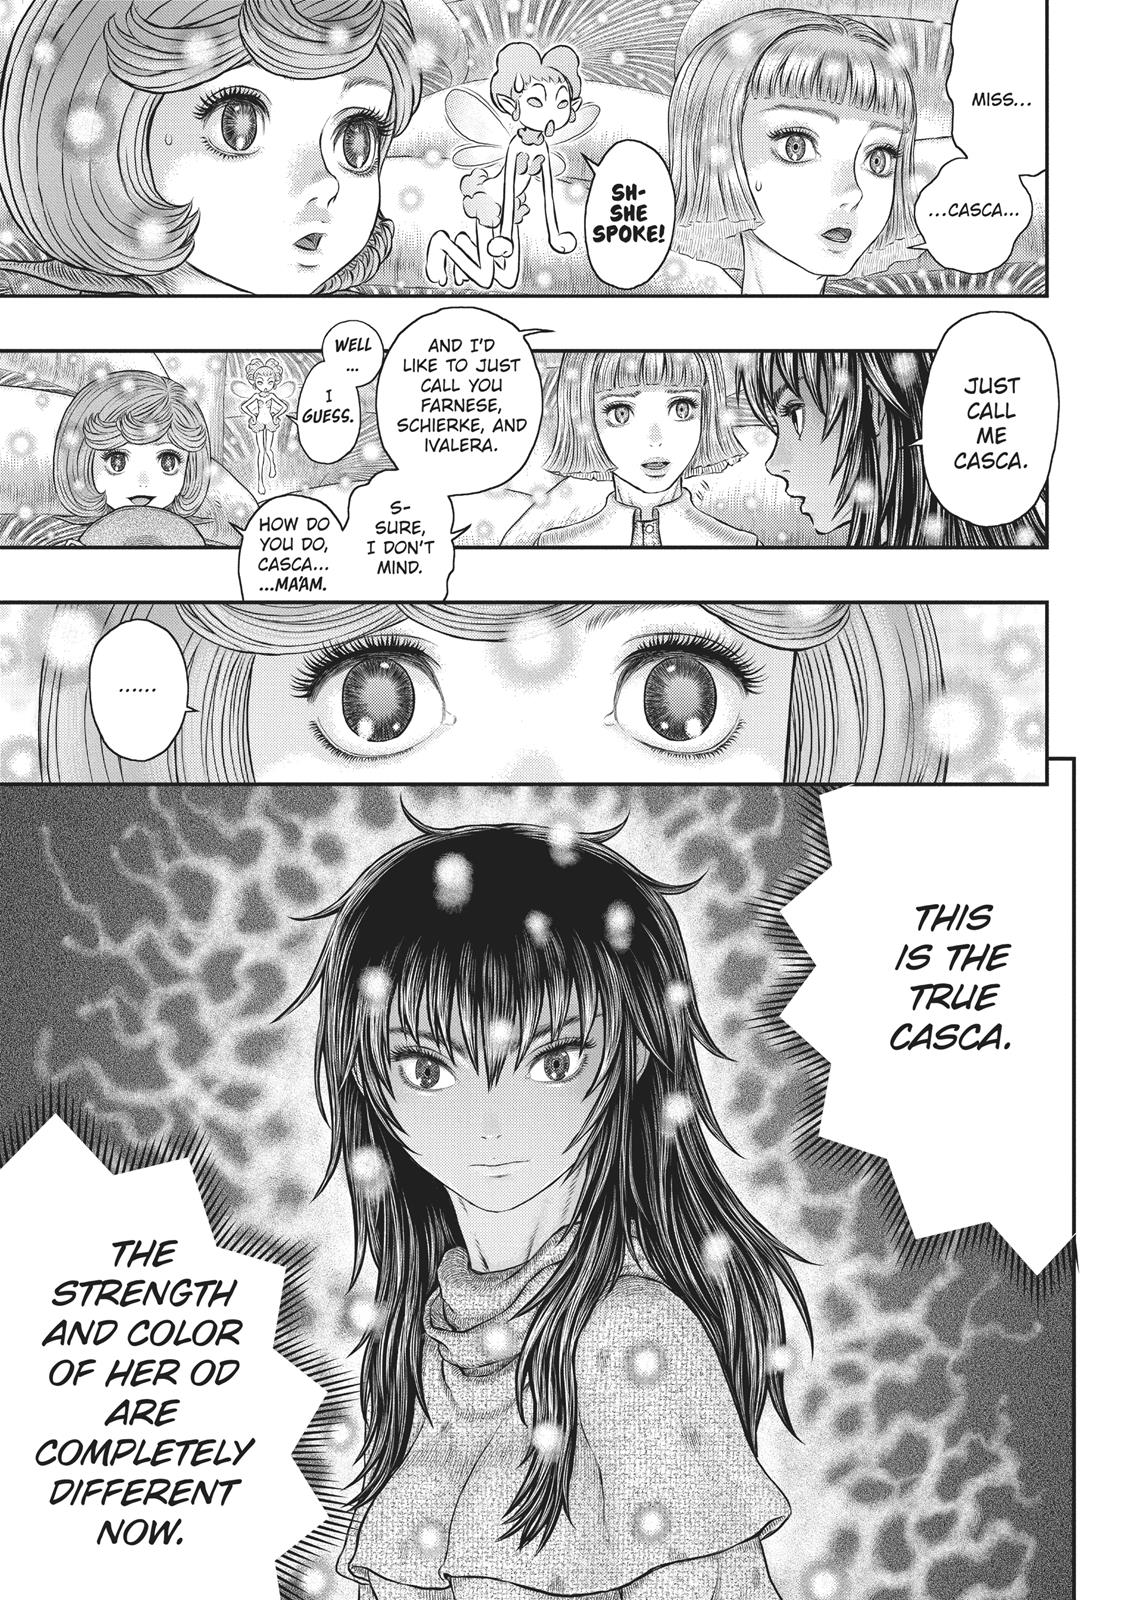 Berserk Manga Chapter 355 image 05